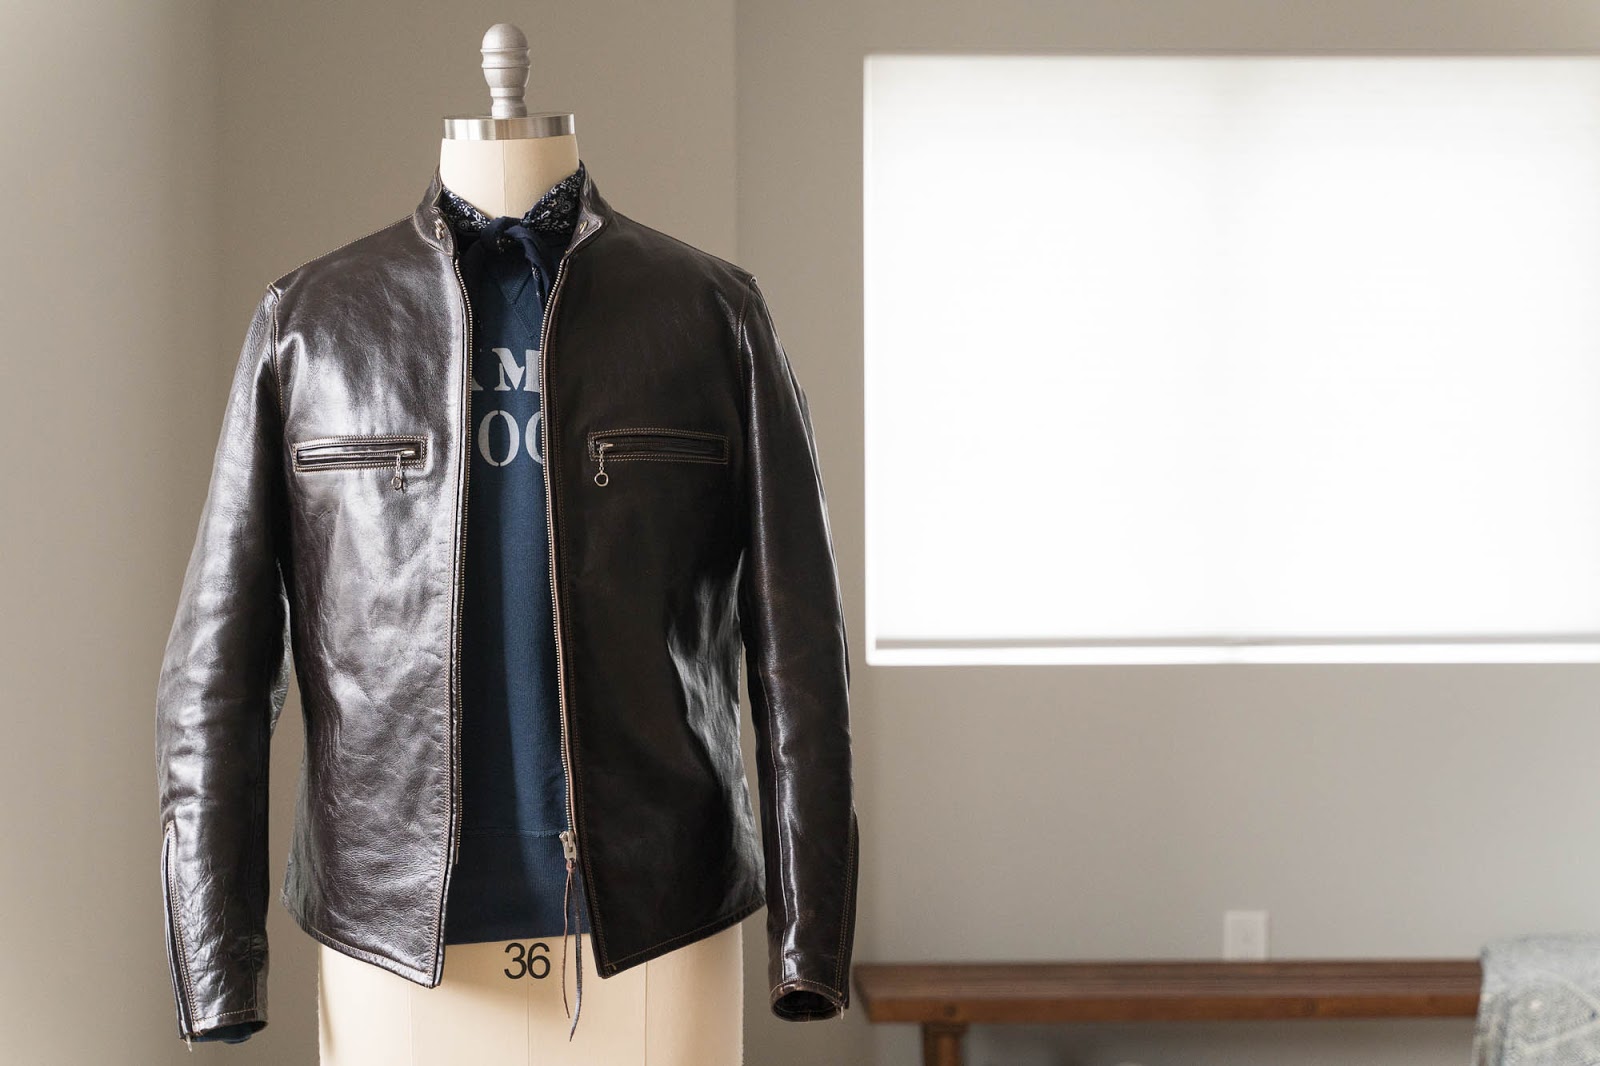 Genuine Leather Jacket for Men Horsehide Slim Short Fit Western